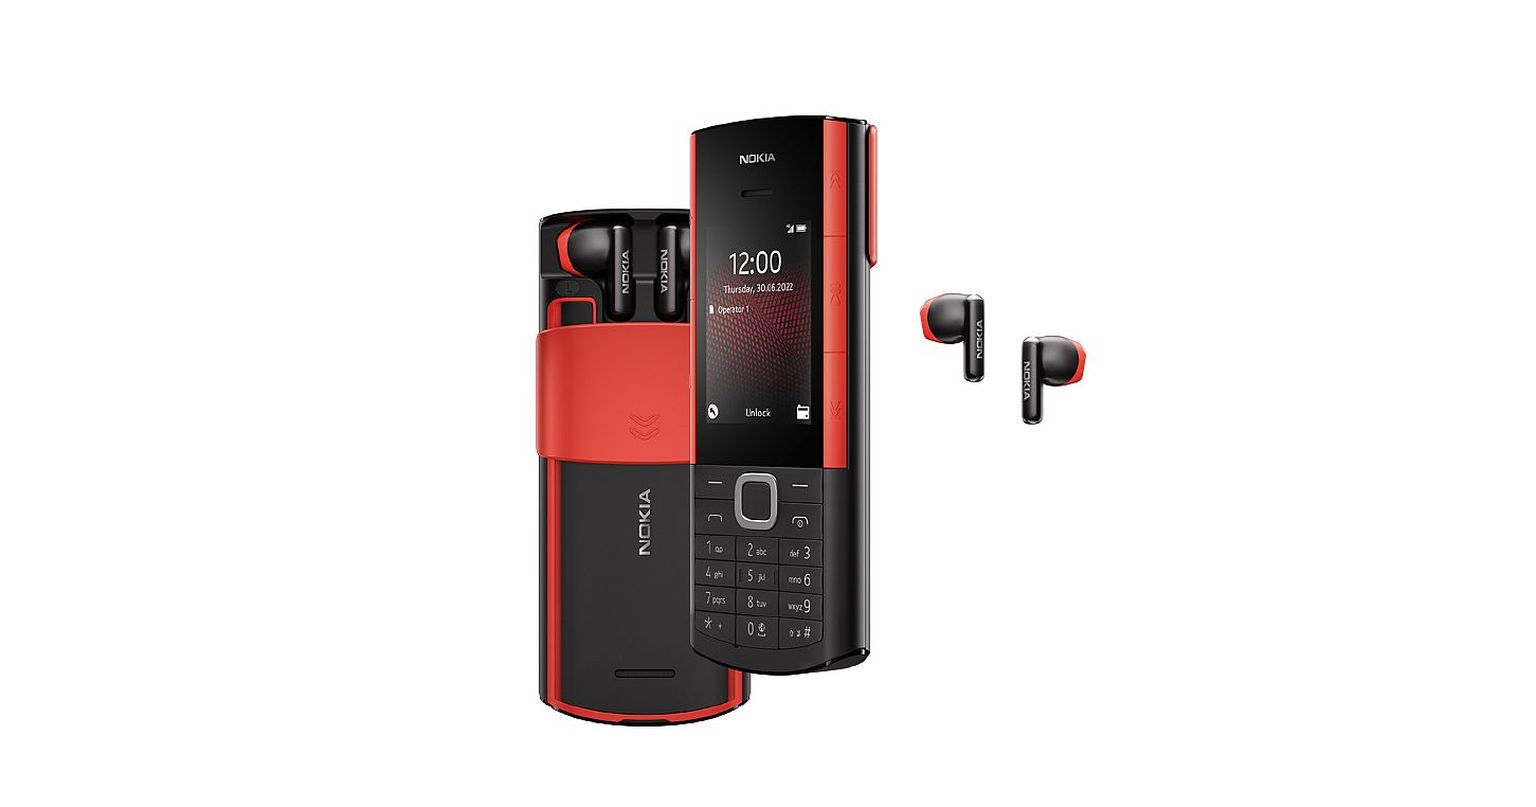 Klassikaline telefon koos klappidega: Nokia 5710 XpressAudio peidab sahtlis väikeseid juhtmevabasid klappe, mis tavaliselt käivad laadimiskapslis. Seekord asendab aga kapslit kõik-ühes nuputelefon ise.